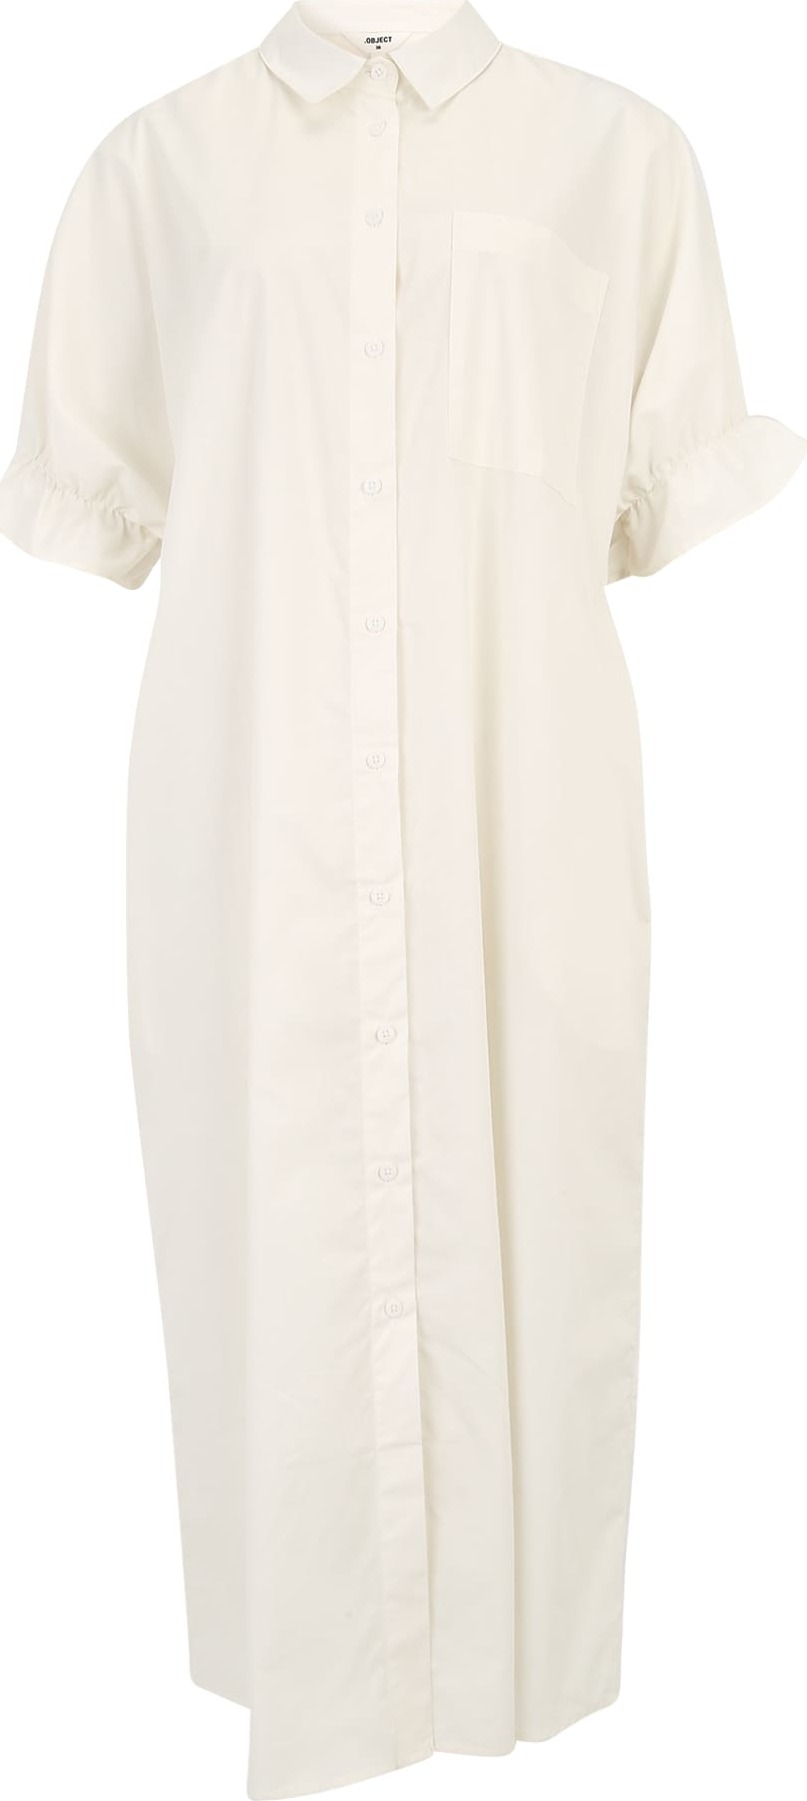 OBJECT Tall Košilové šaty 'Dora' bílá